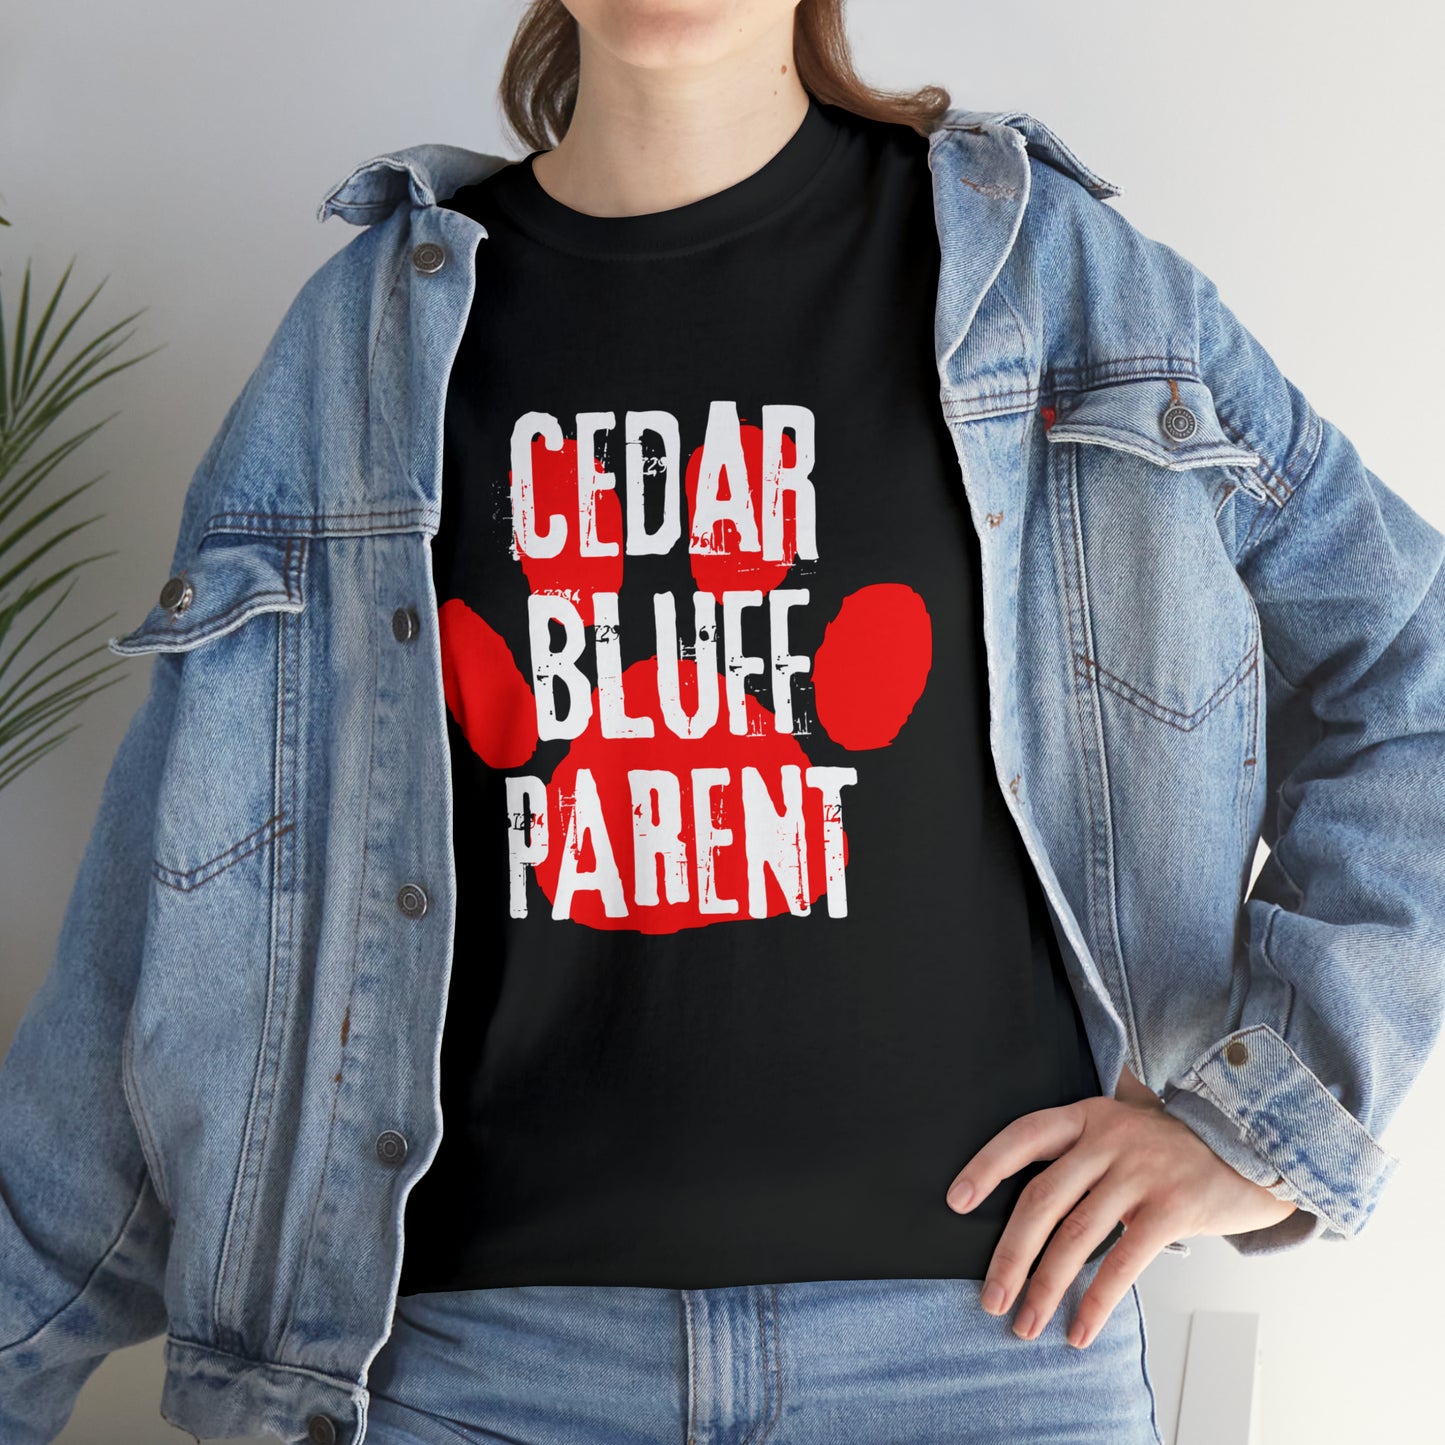 CBHS - Parent T-Shirt